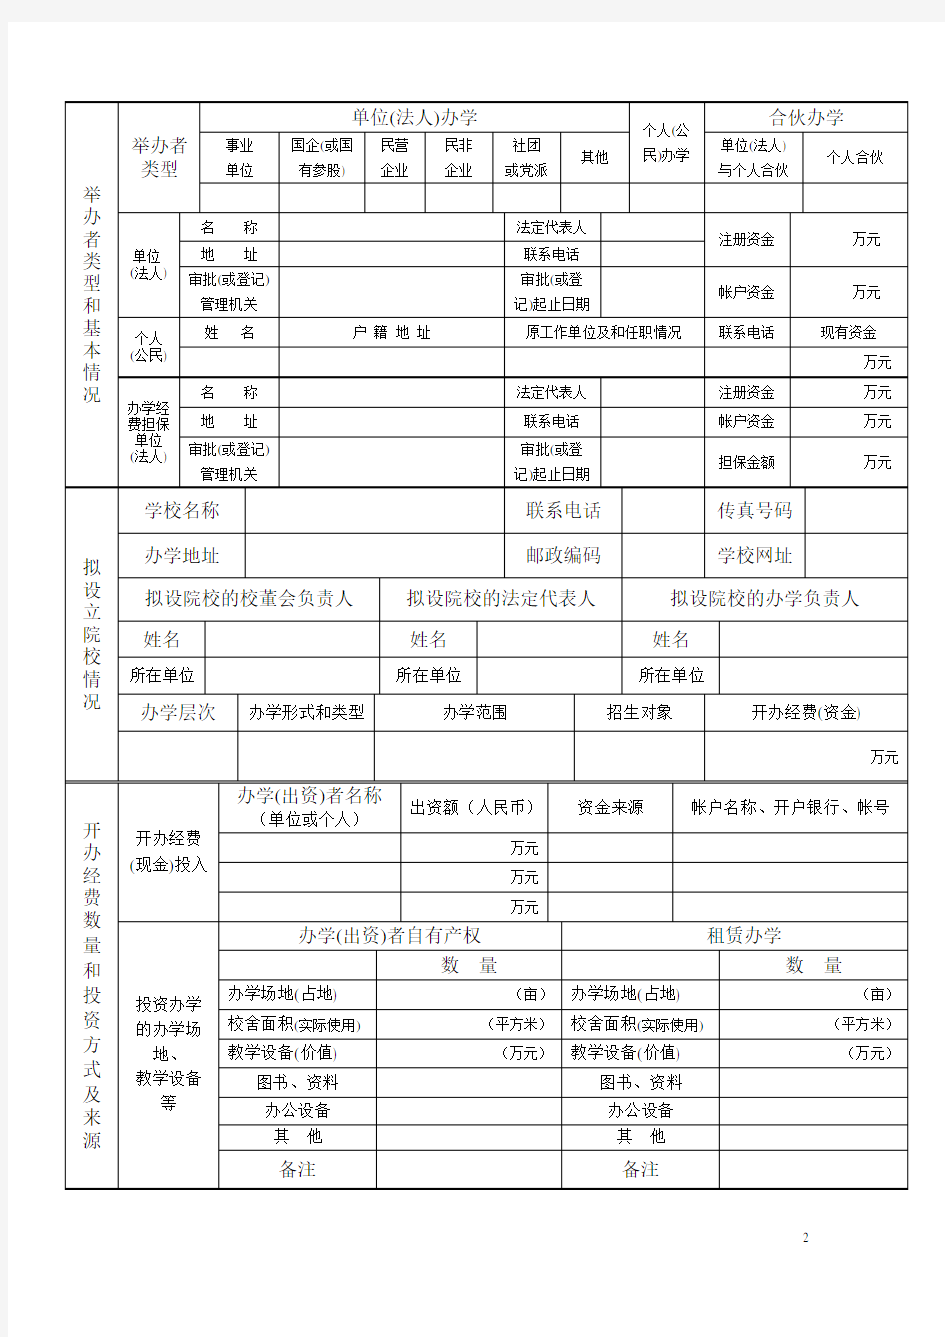 上海市民办培训机构筹设审批登记表